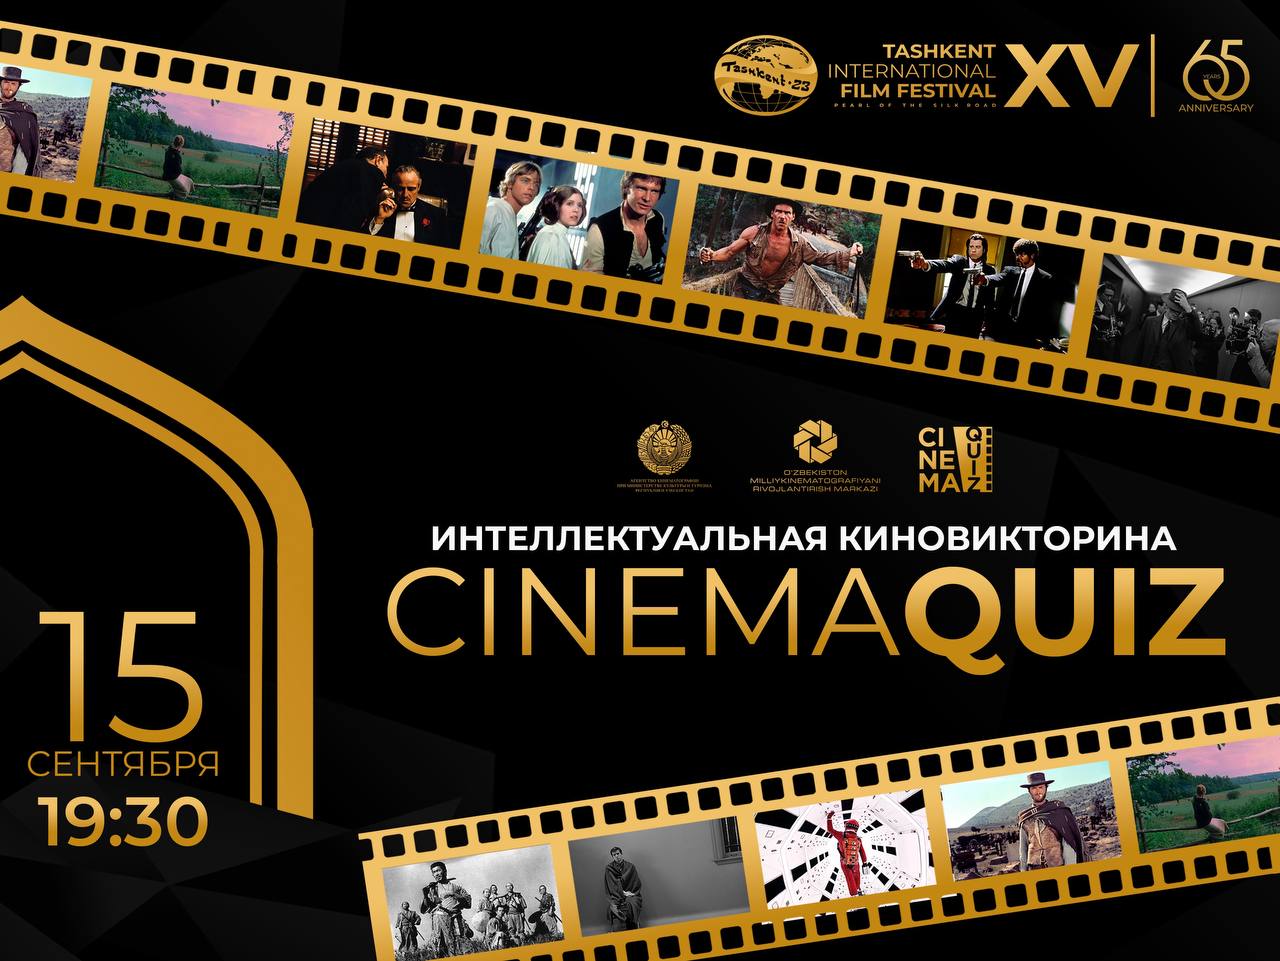 15 сентября состоится киновикторина «CinemaQuiz» в рамках спецпроекта XV Ташкентского международного кинофестиваля «Творческие встречи»